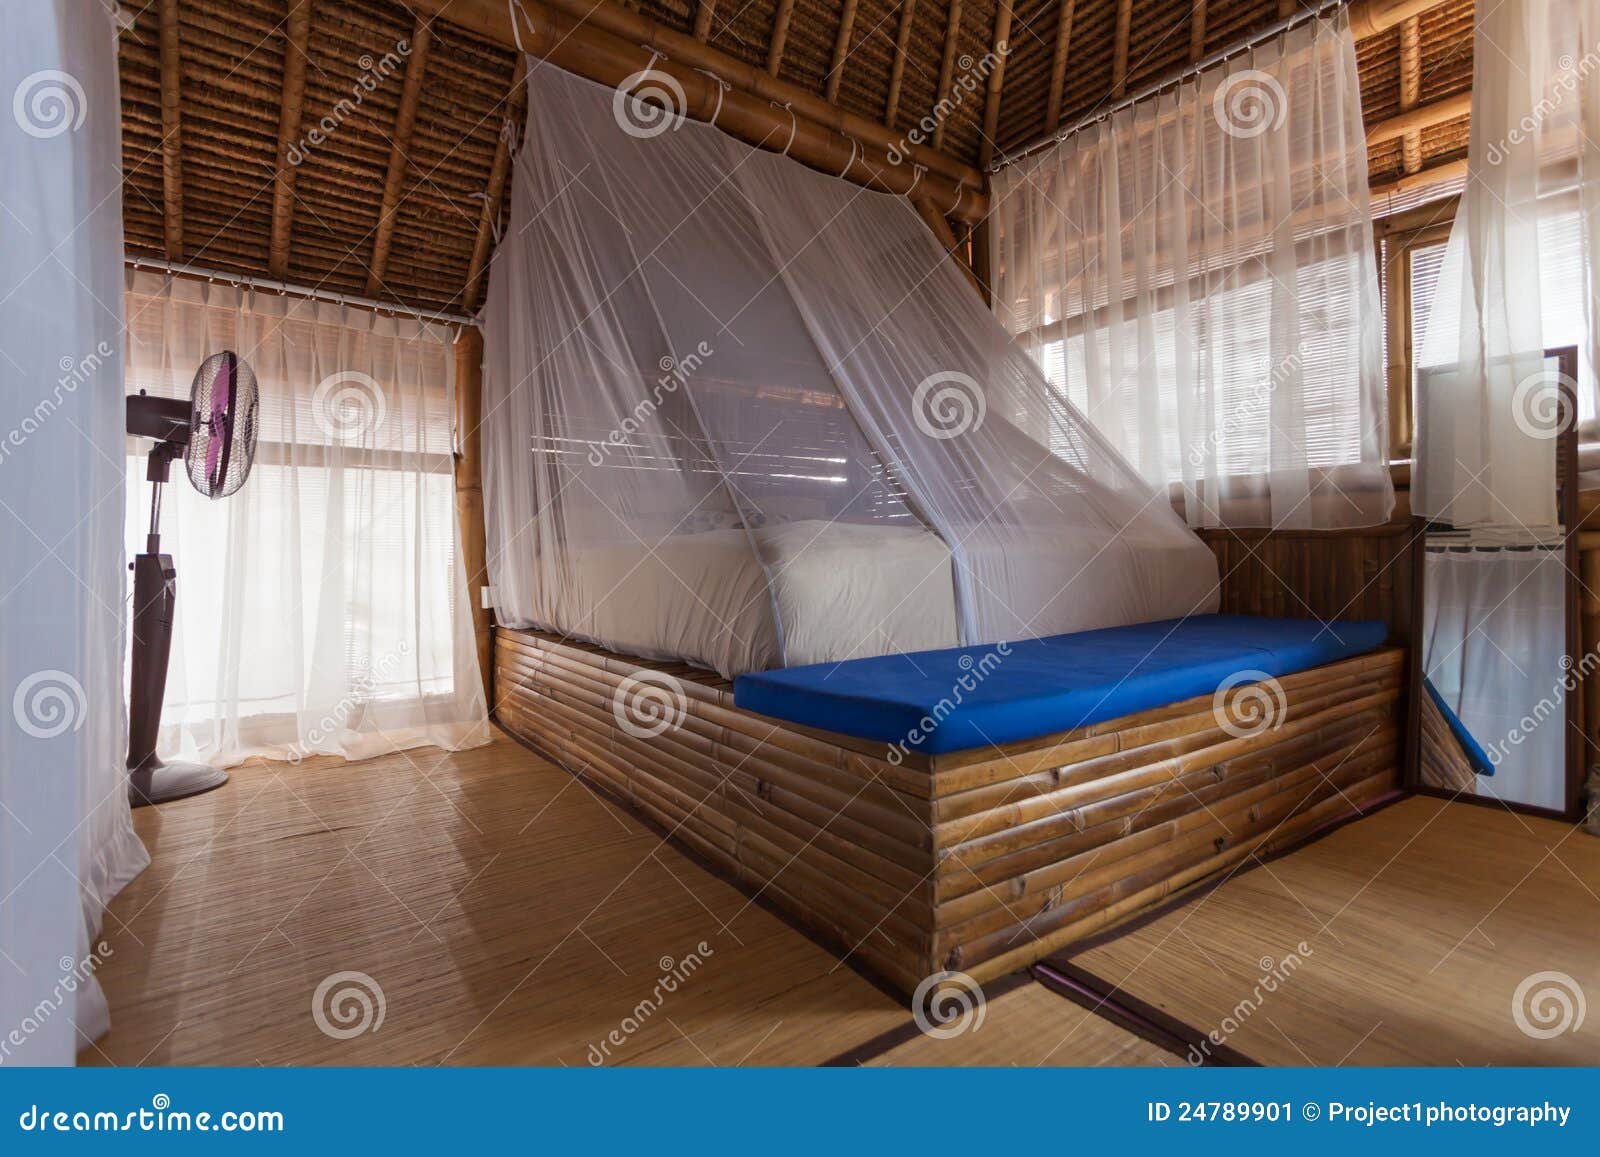 De Slaapkamer Het Bamboe Stock Afbeelding - Image of gordijn, building: